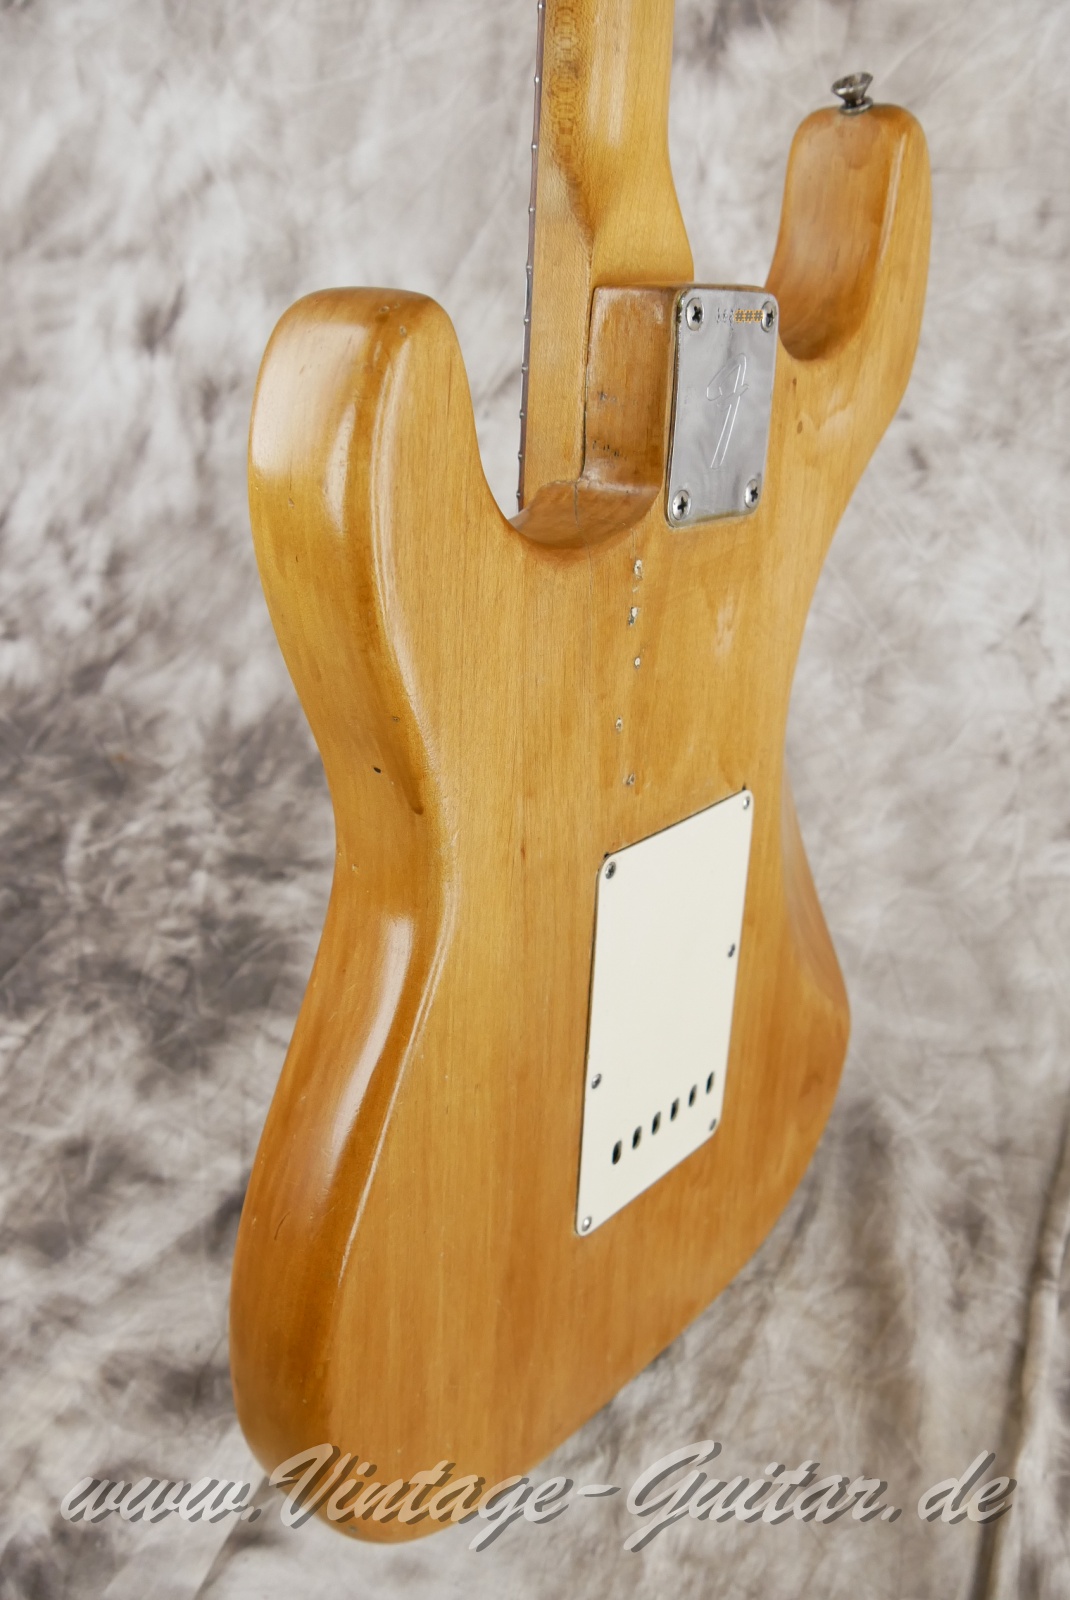 Fender_Stratocaster_body_stripped_1966-011.JPG